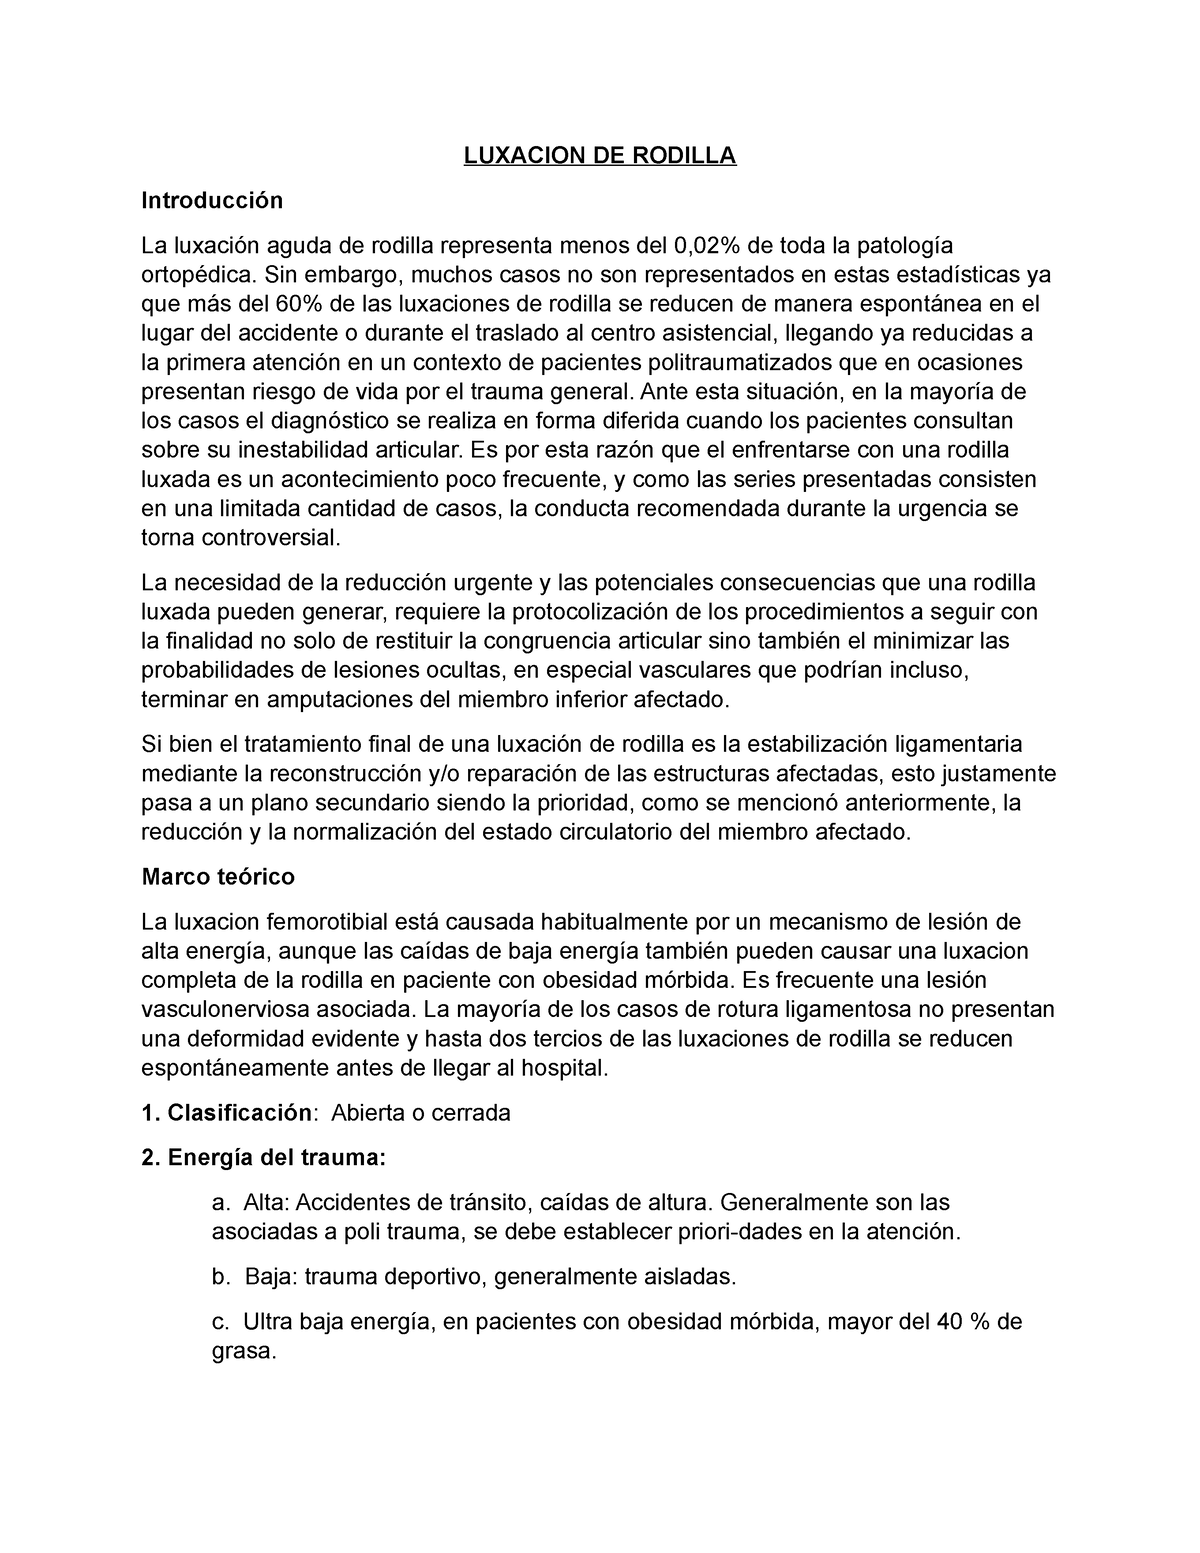 Luxacion DE Rodilla - resumen - LUXACION DE RODILLA Introducción La ...